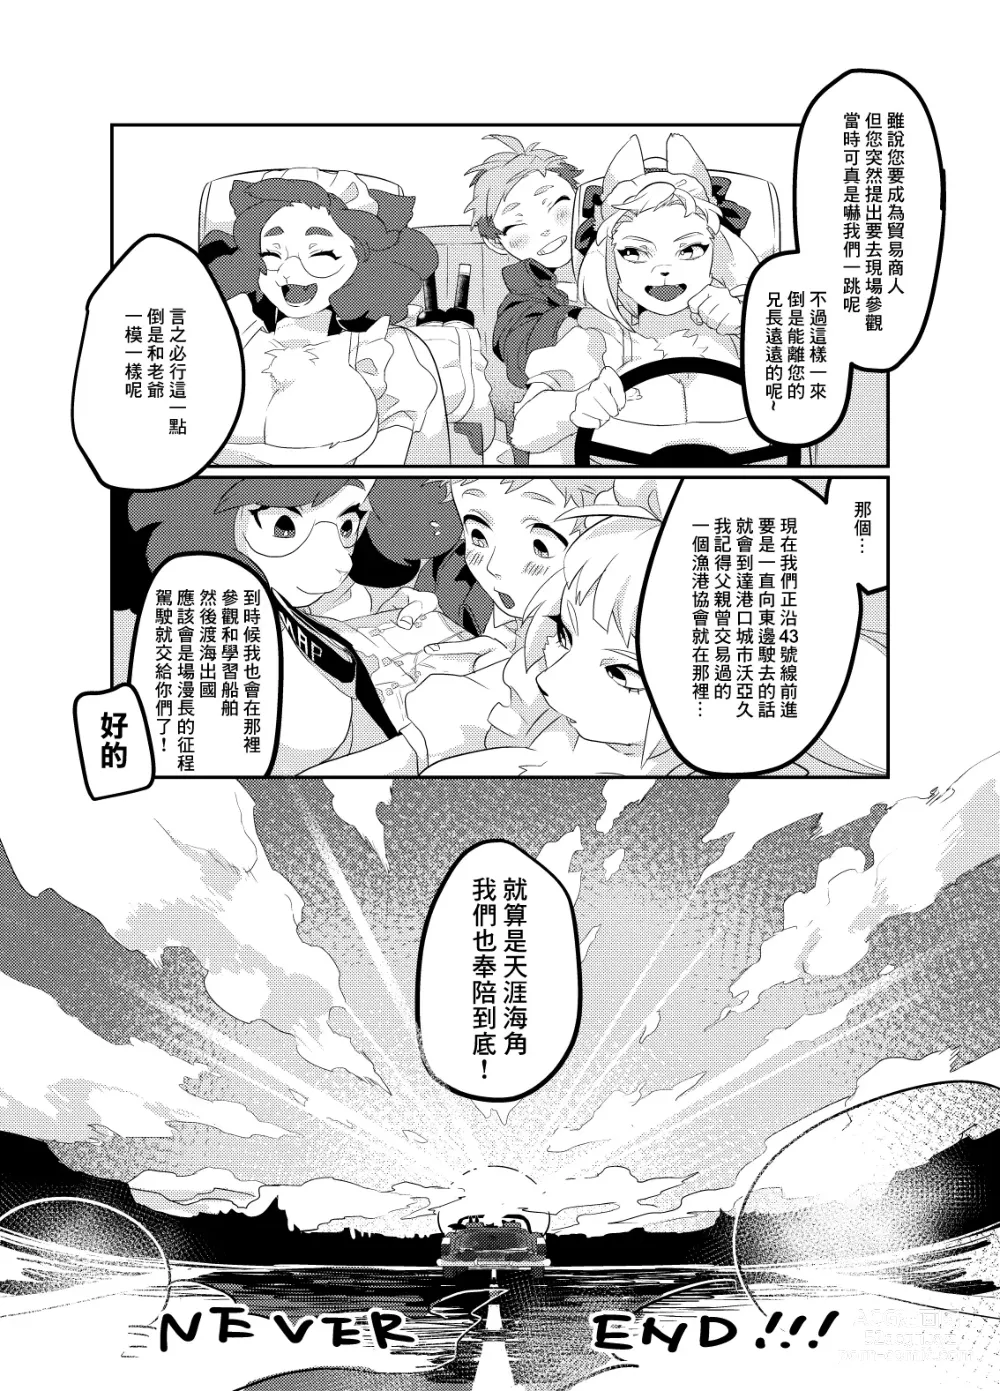 Page 49 of doujinshi Meido inHEAVEN